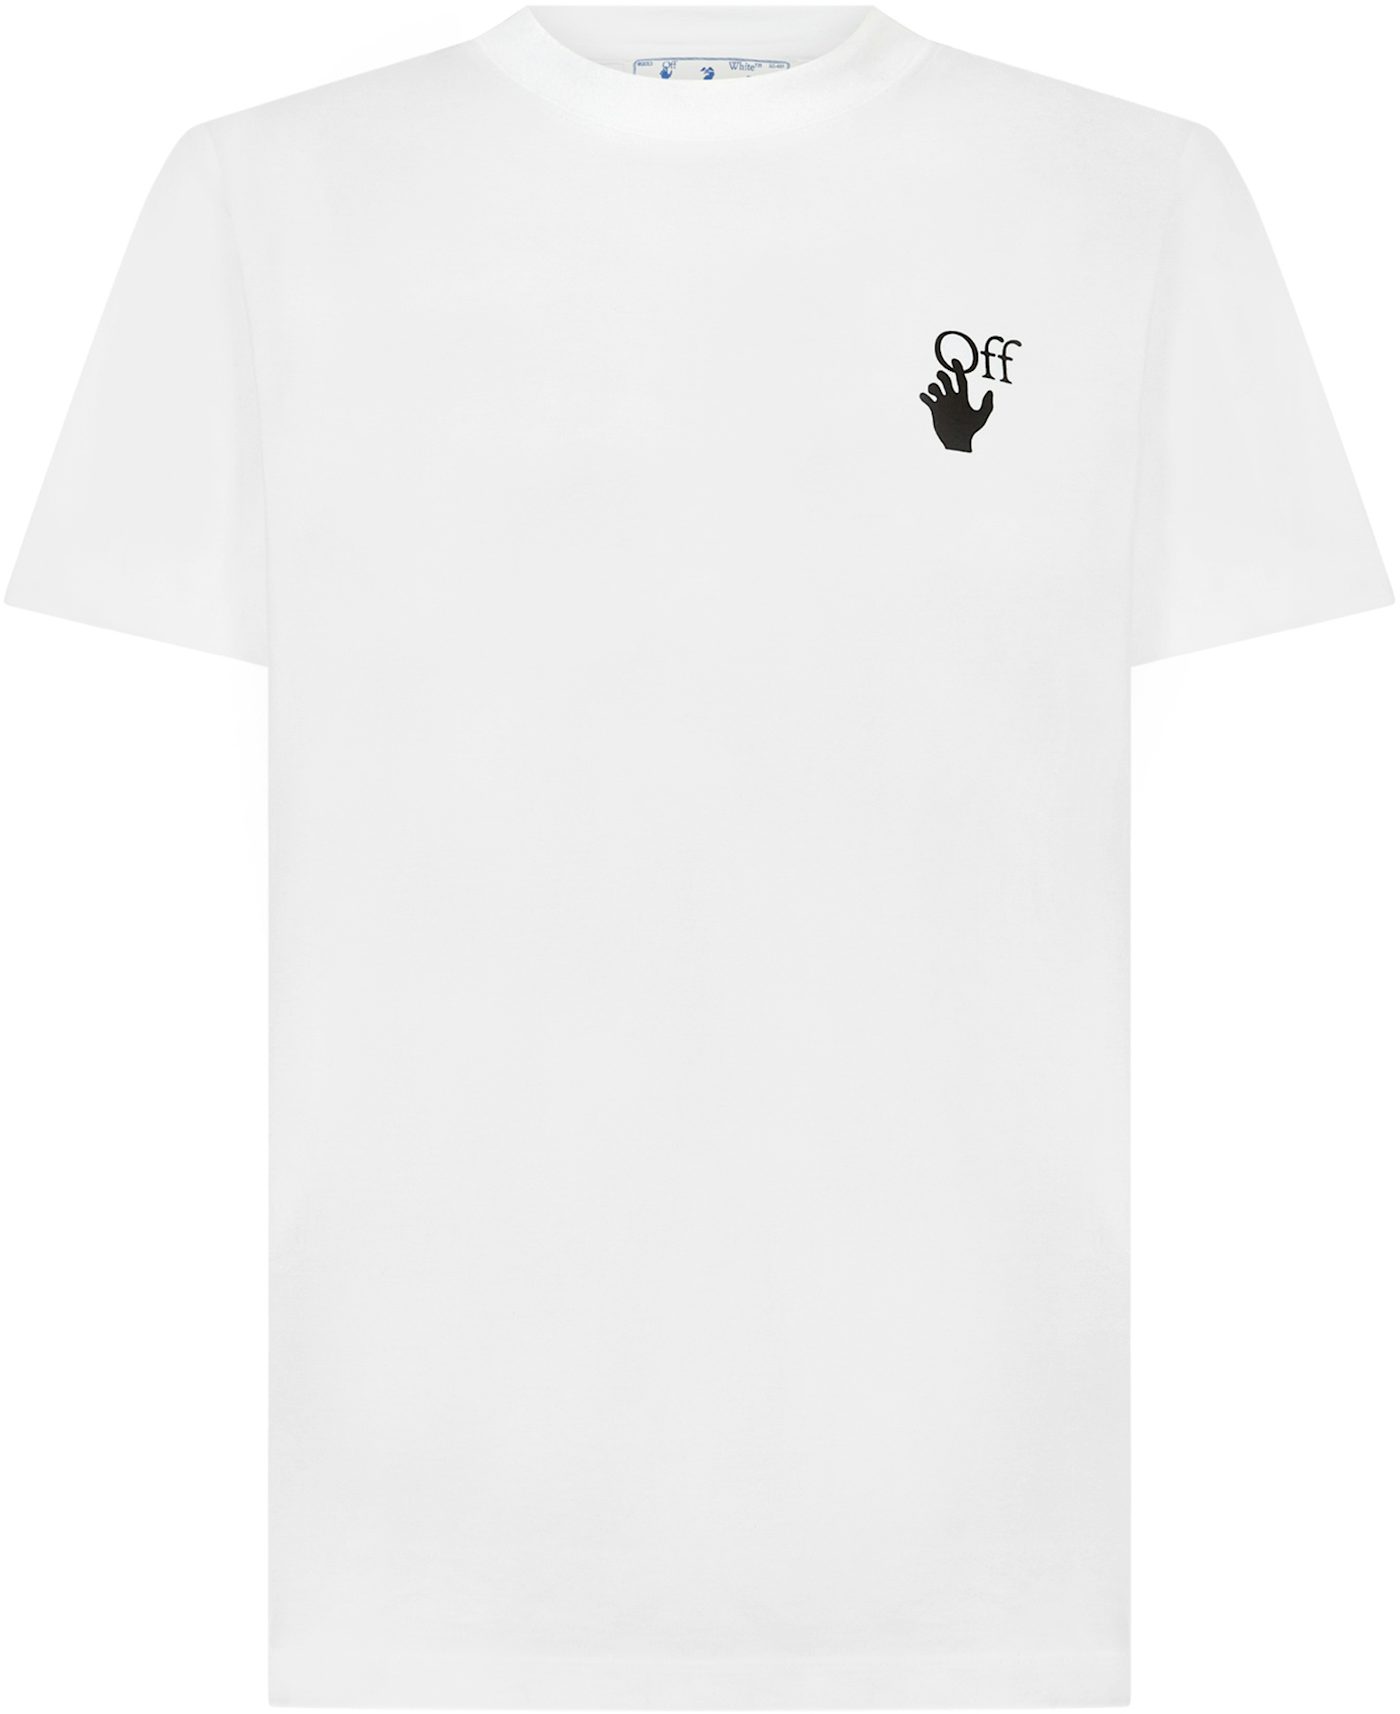 Off-White c/o Virgil Abloh Goretex Graffiti Print T-shirt in White for Men